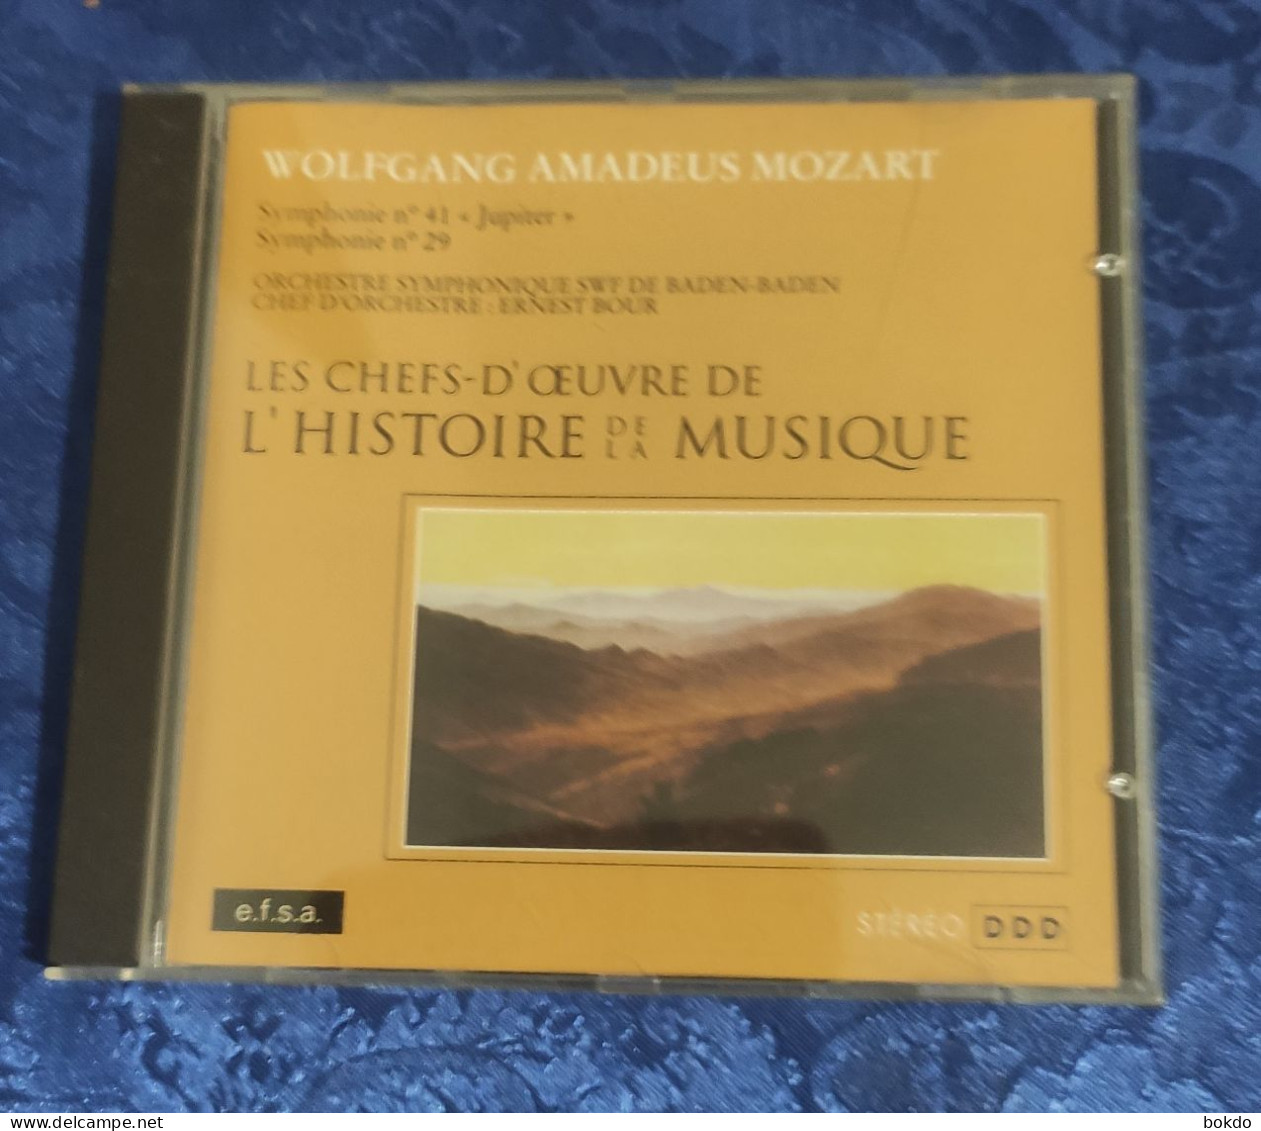 Mozart - Symphonie N° 41 Et N° 29 - Clásica